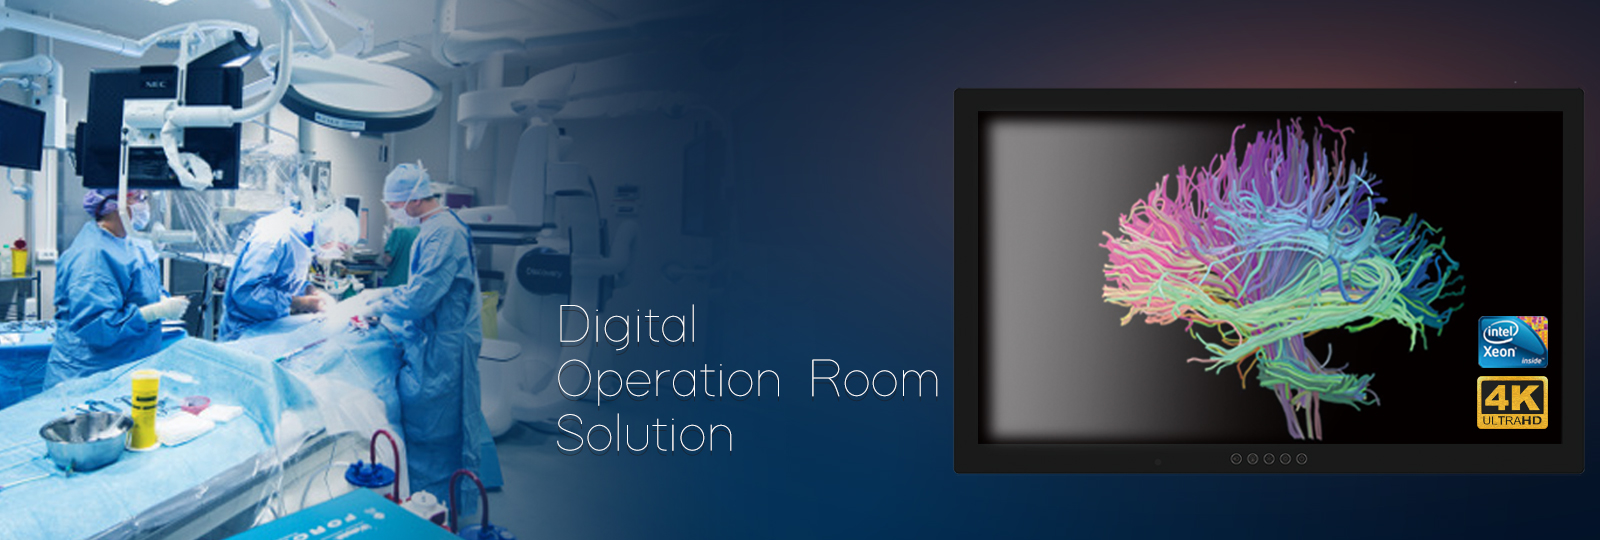 Digital Operation Room Solution